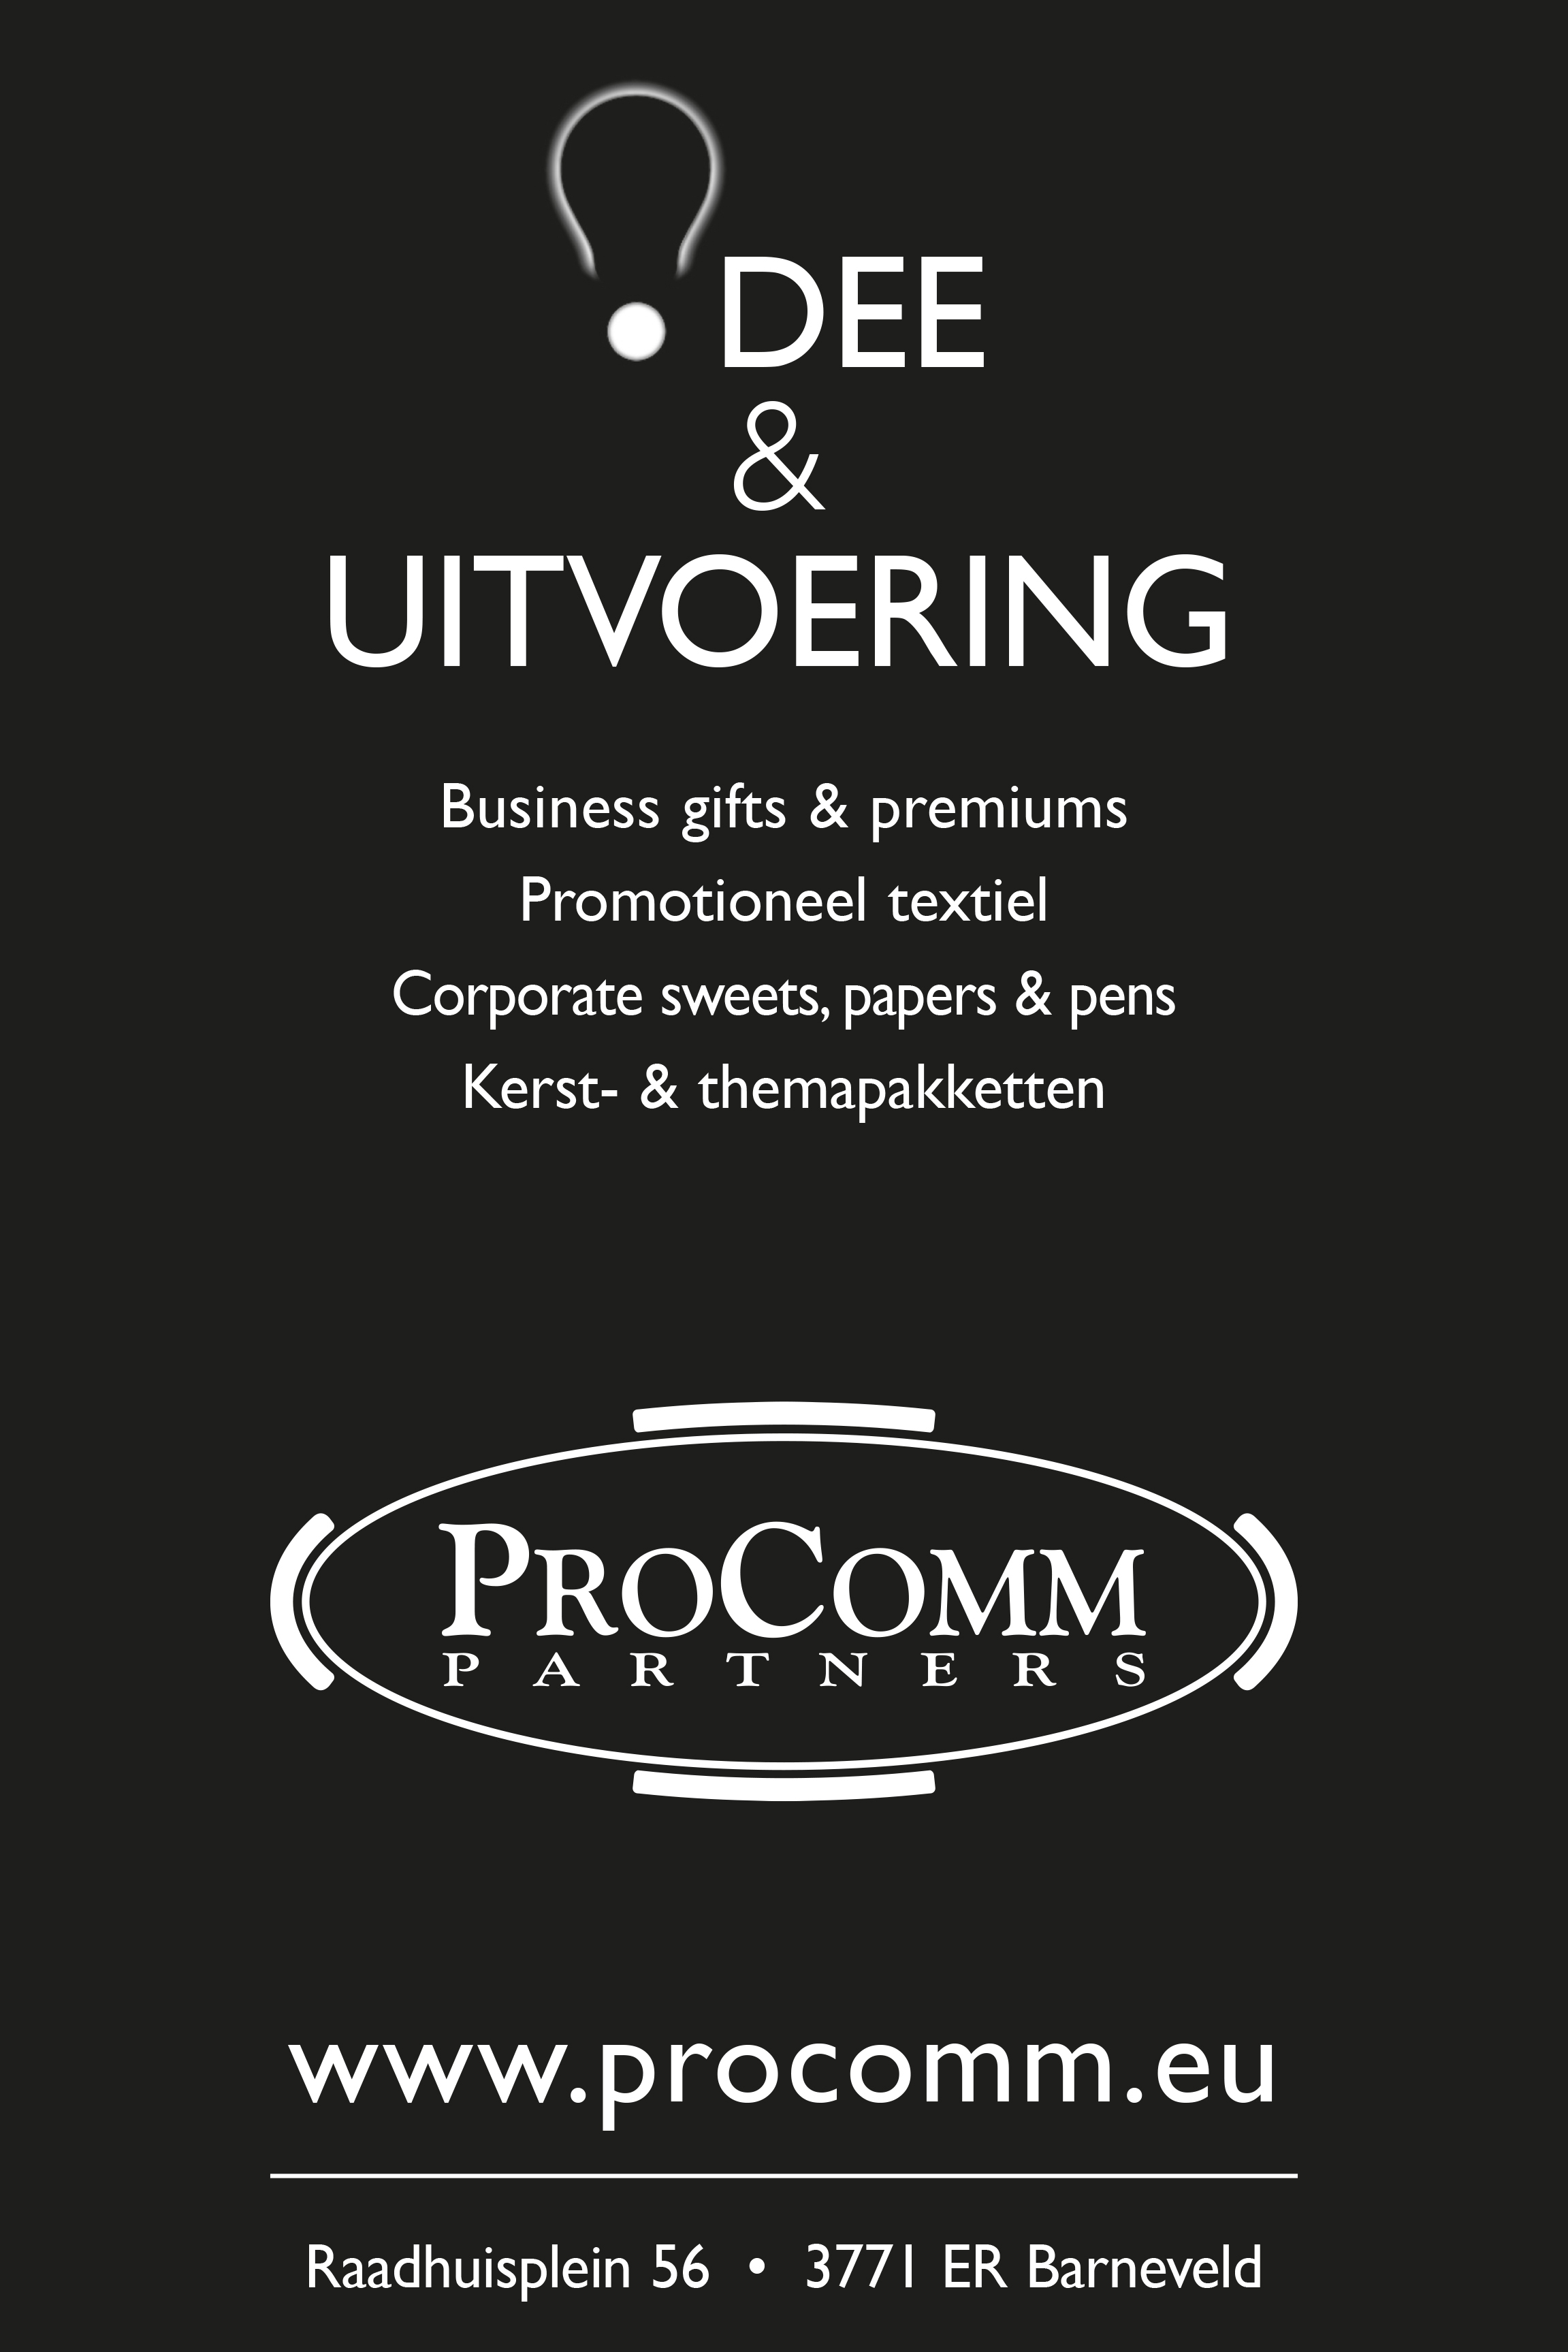 Procomm Partners